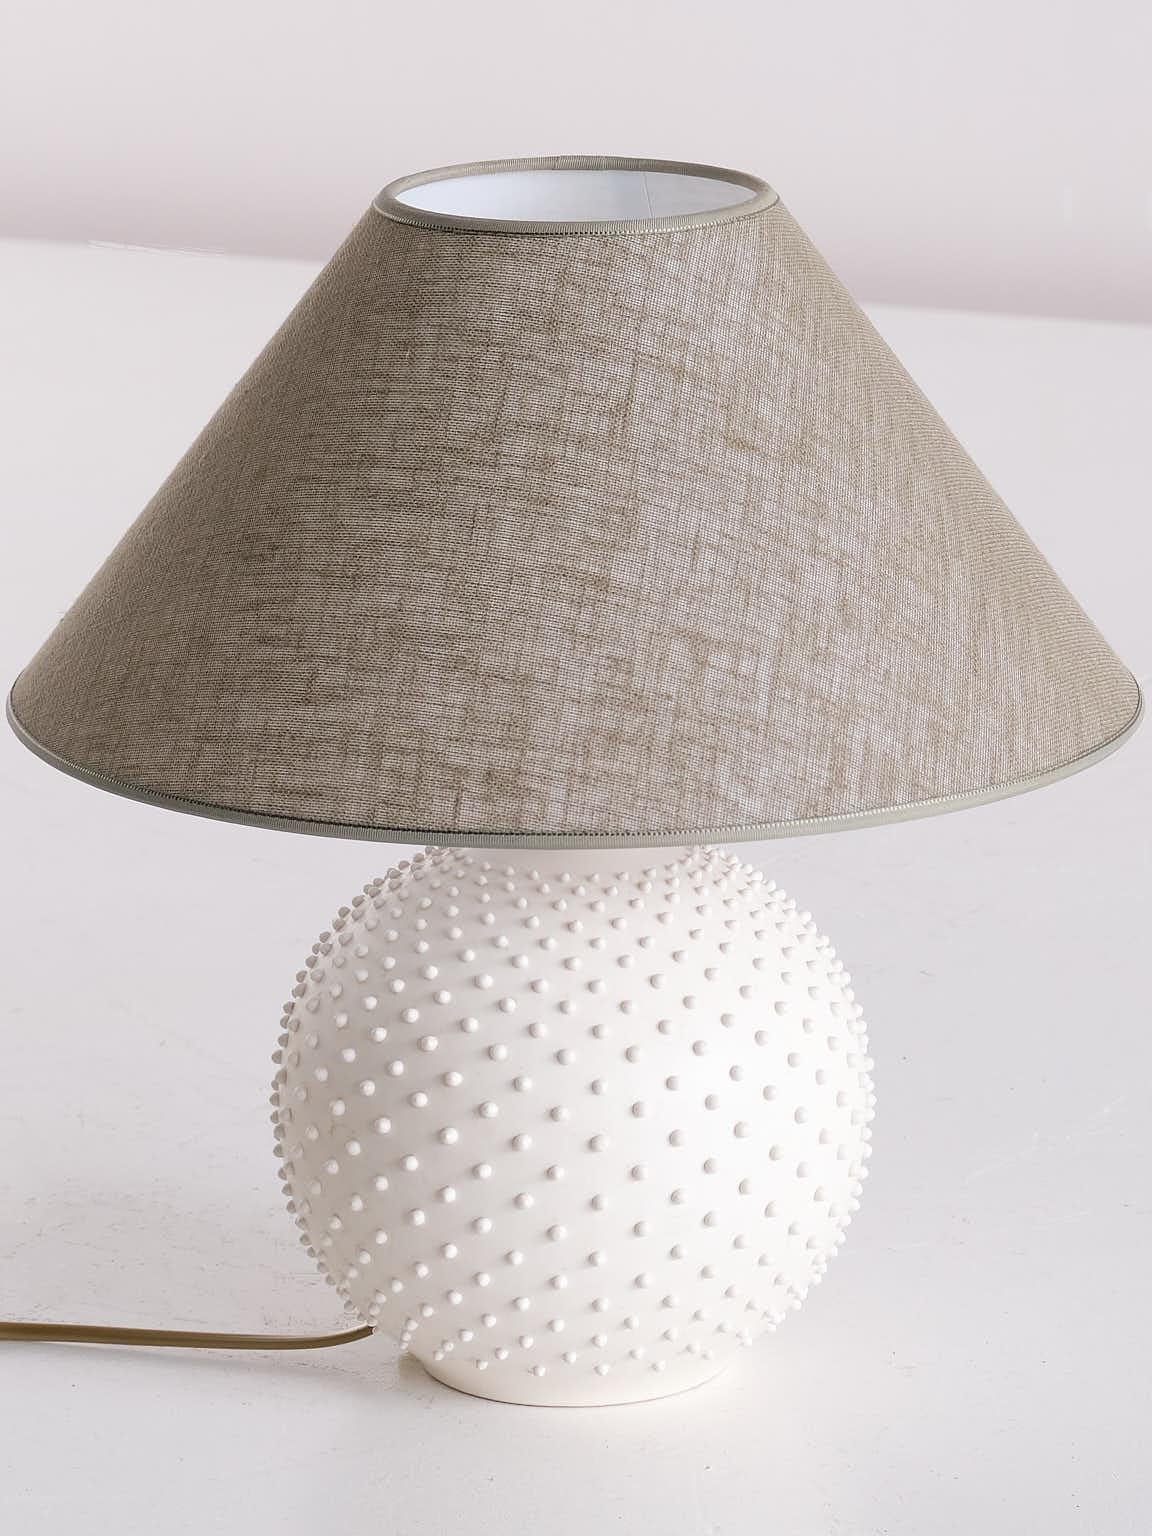 textured white lamp